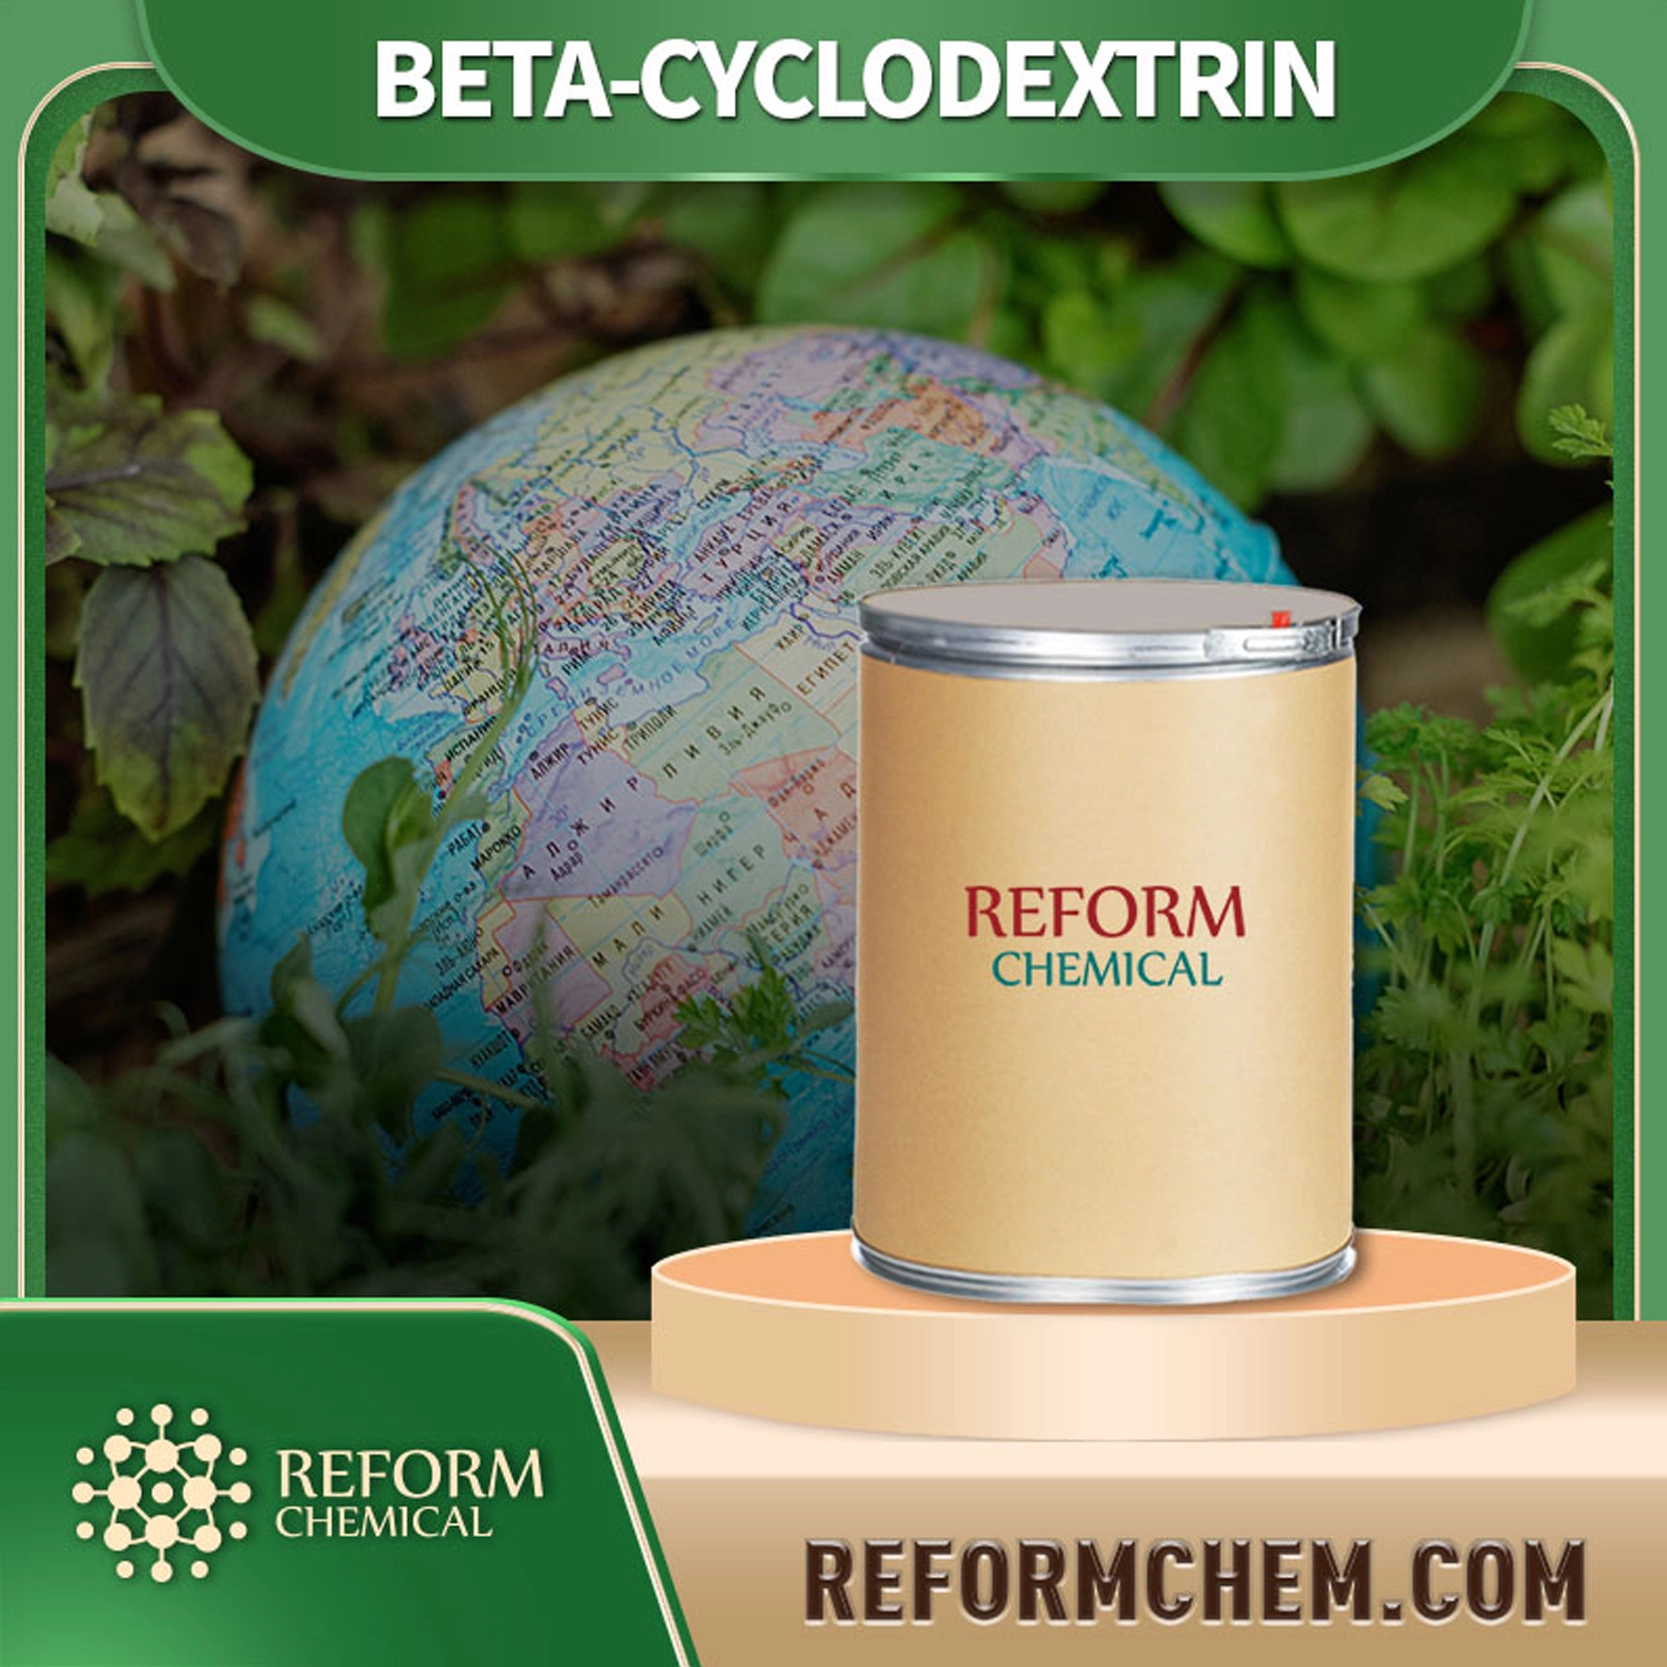 BETA-CYCLODEXTRIN